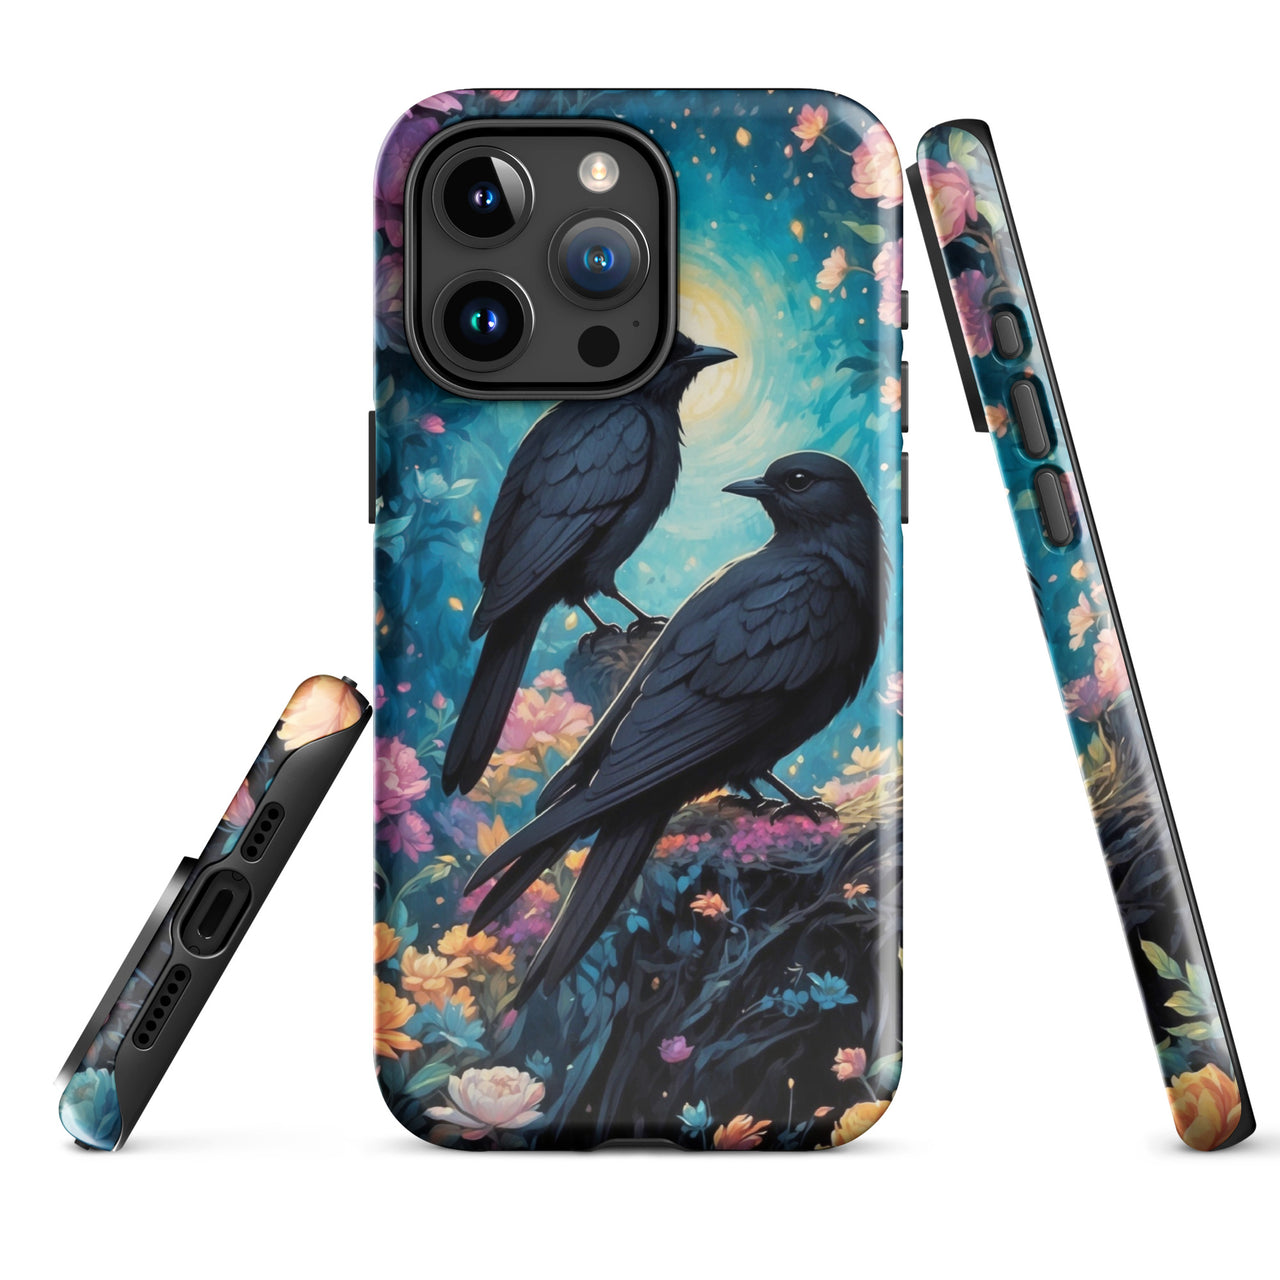 Black Birds - Tough Case for iPhone®